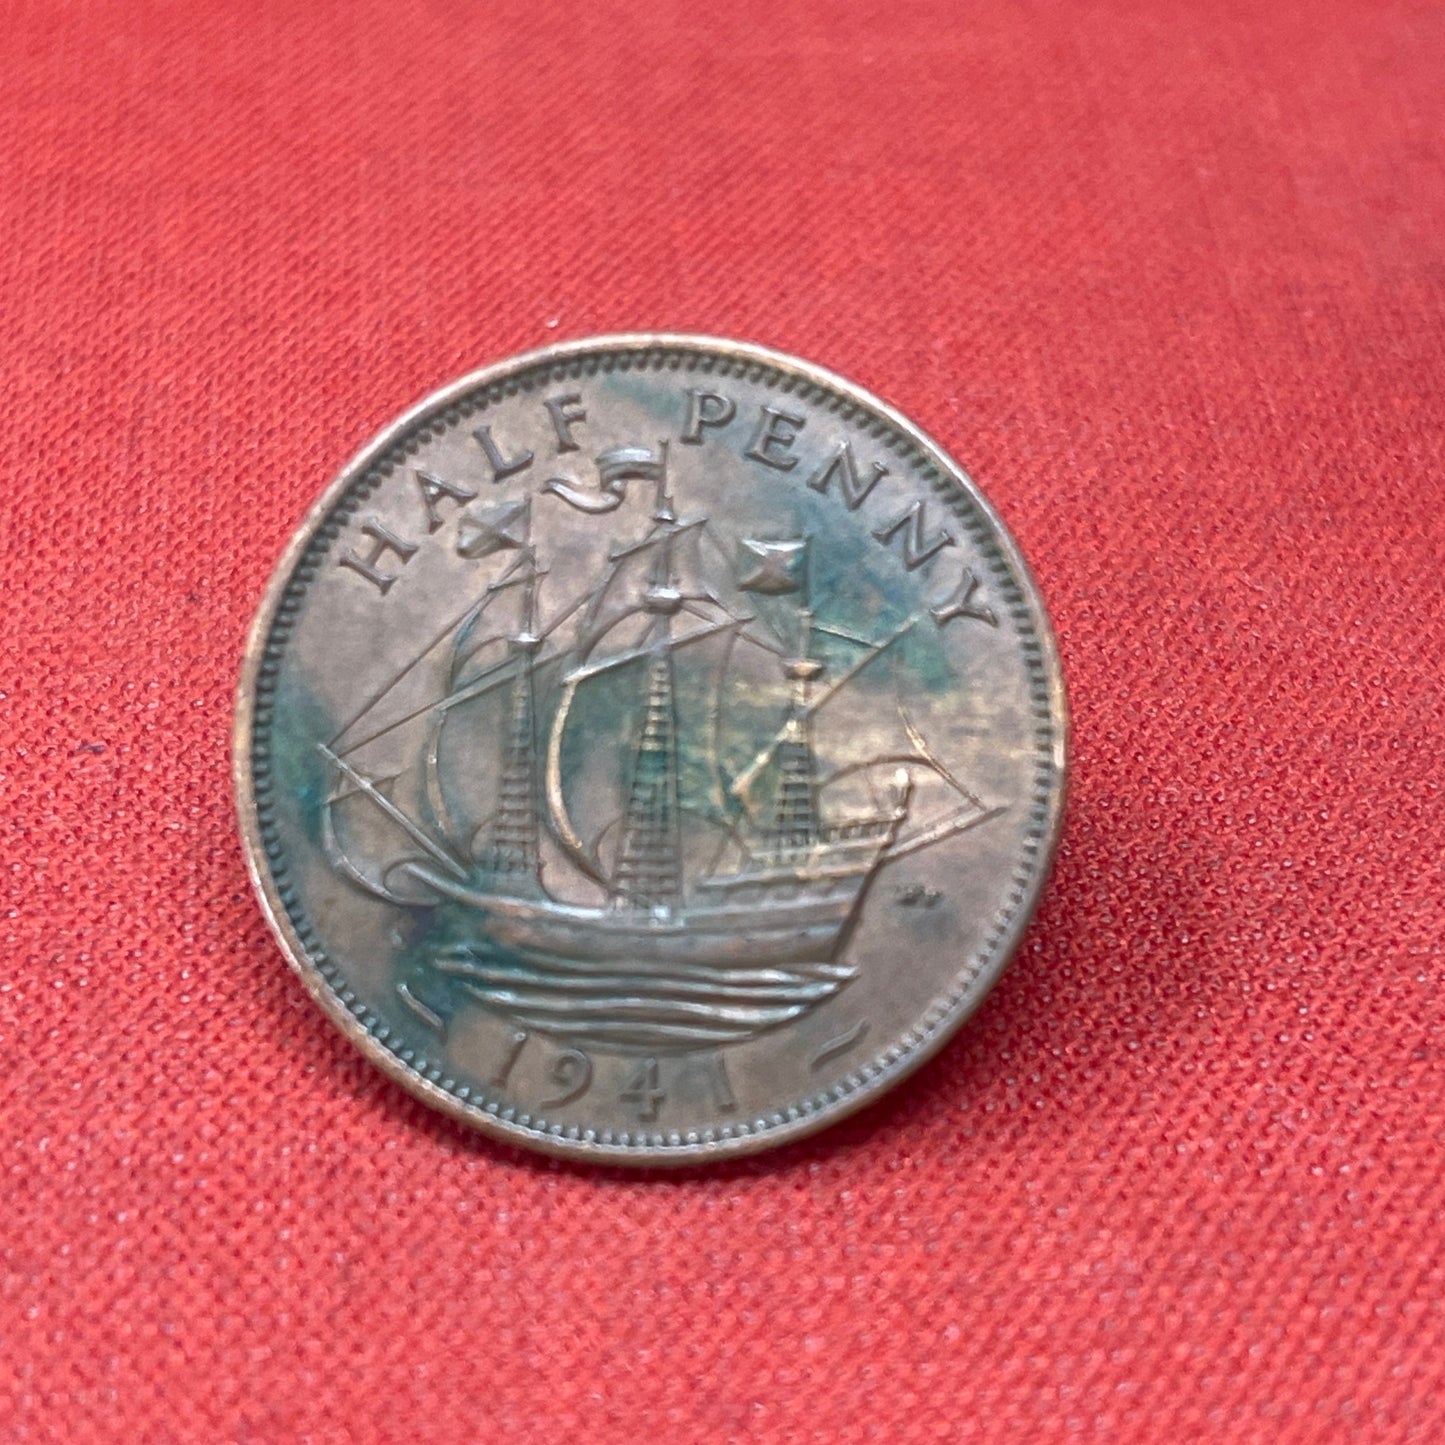 King George VI 1941 Half Penny